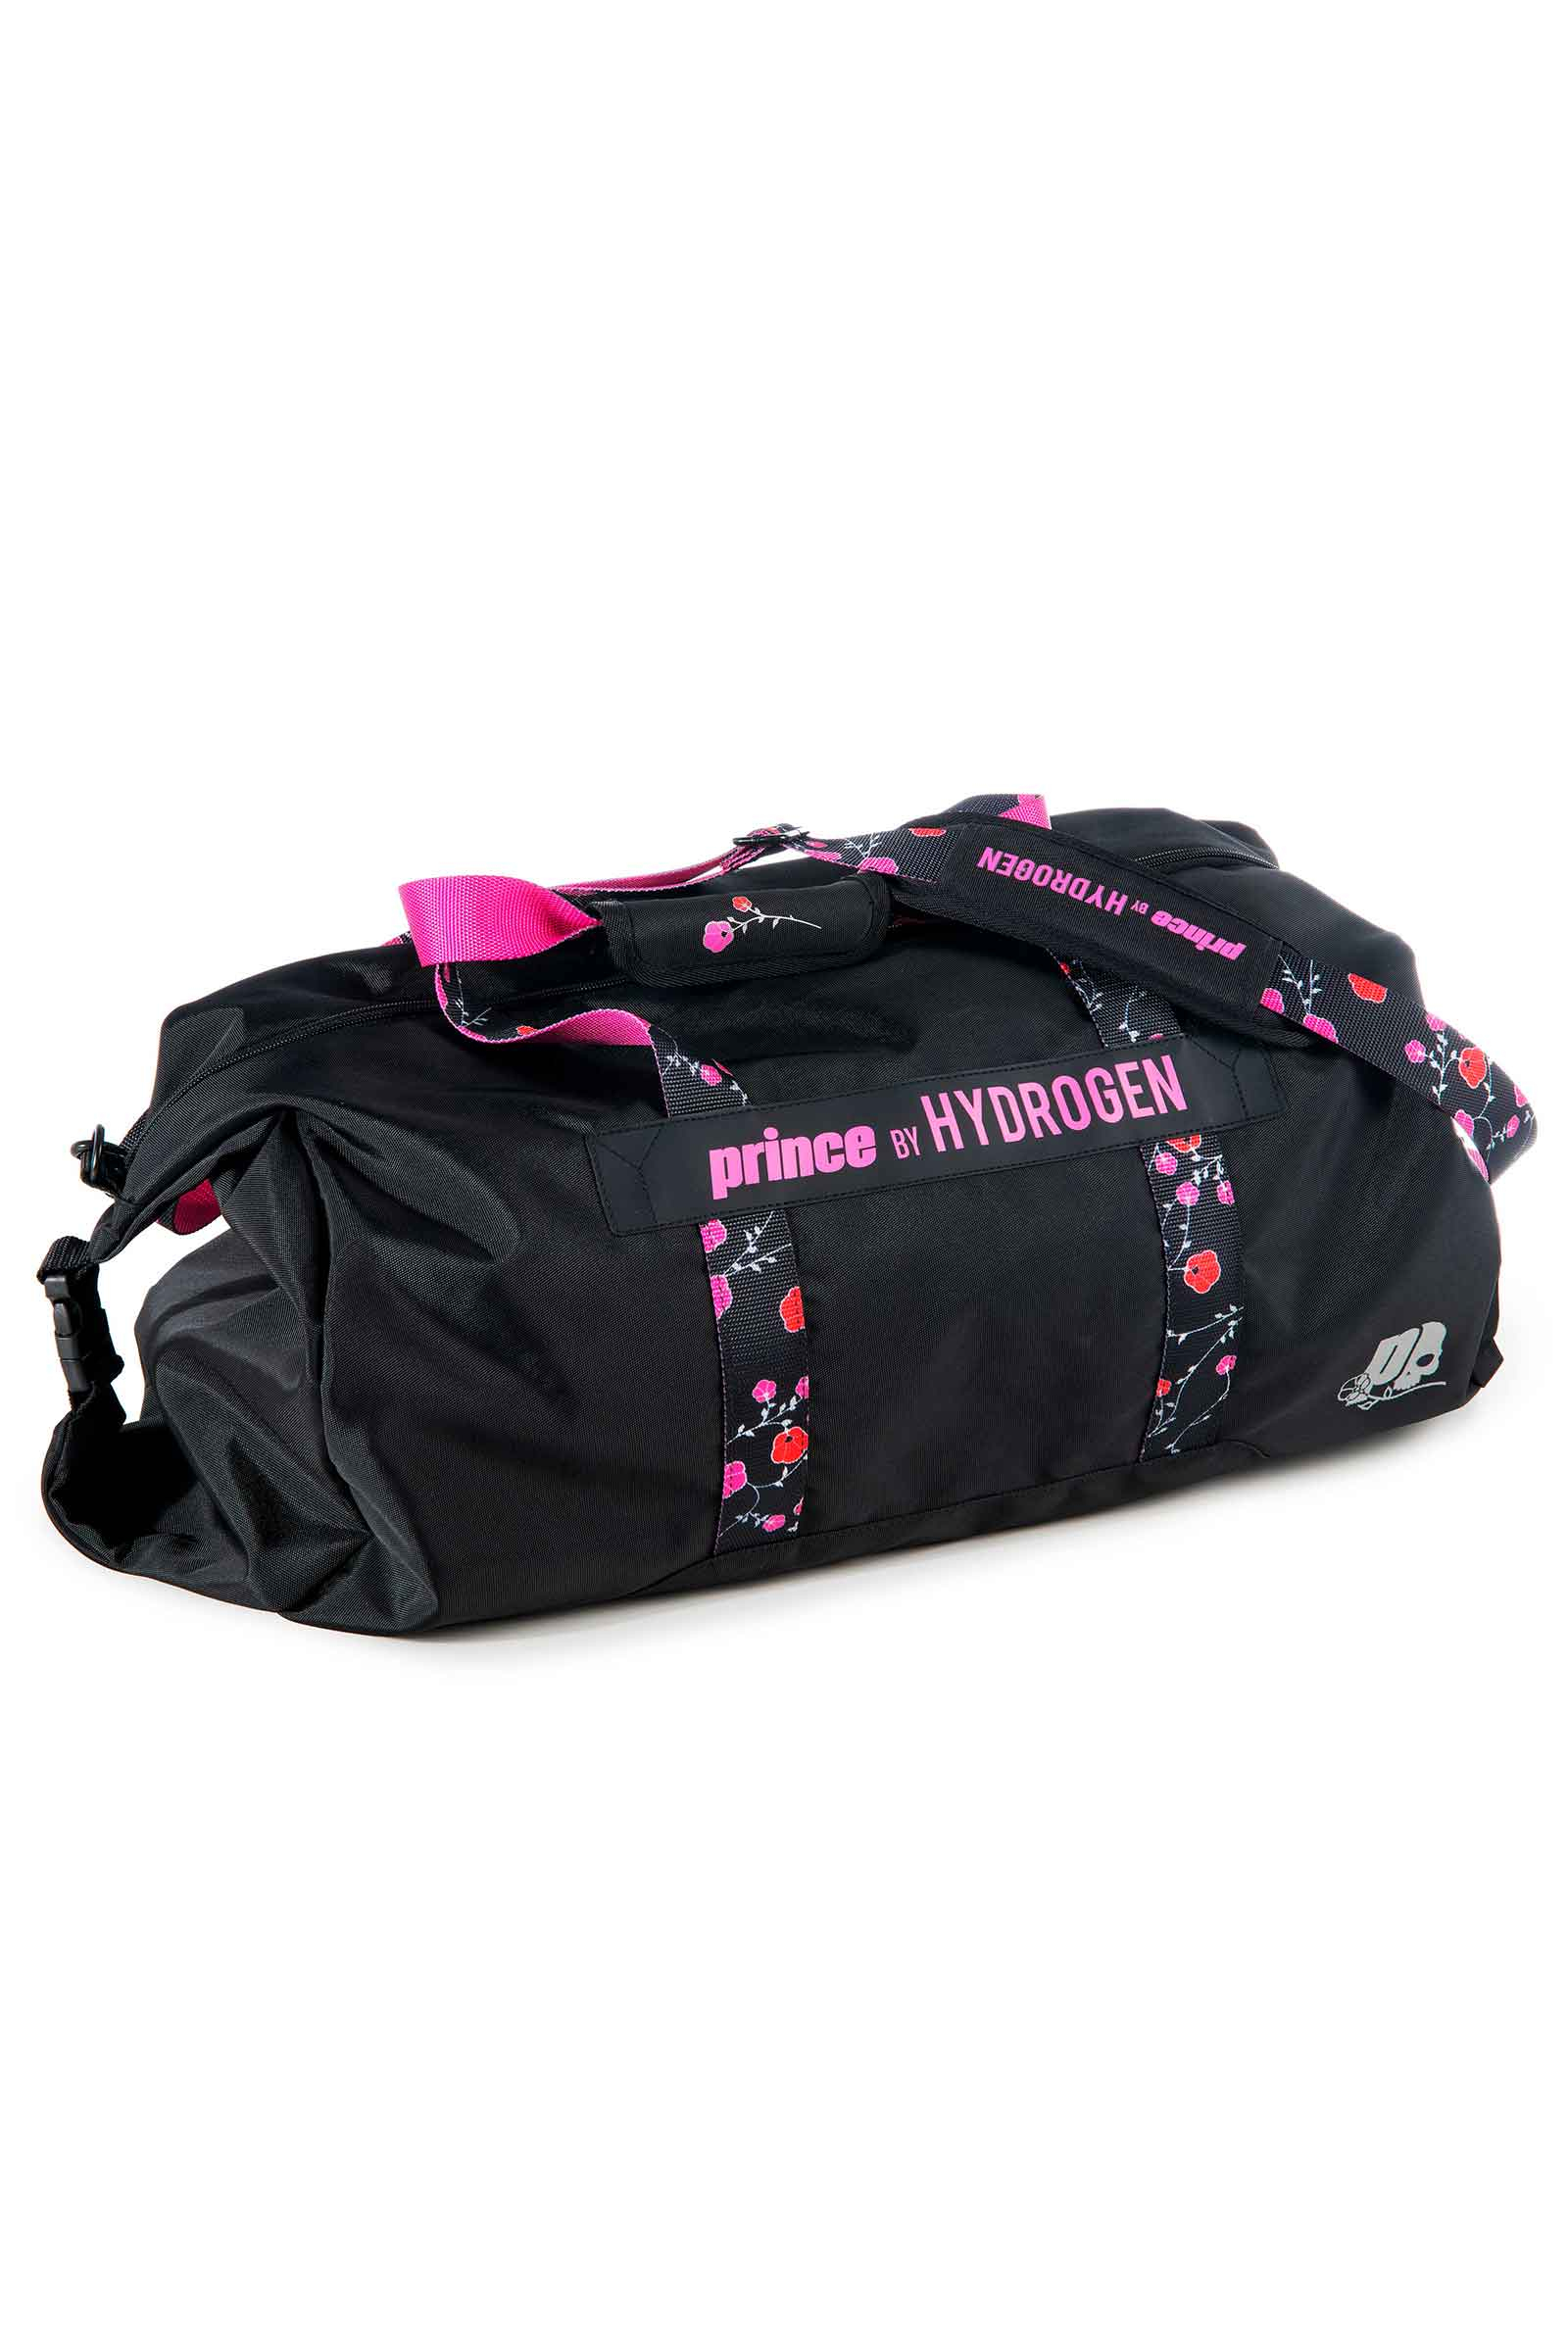 LADY MARY BAG PRINCE BY HYDROGEN - BLACK,FUCHSIA FLUO - Abbigliamento sportivo | Hydrogen